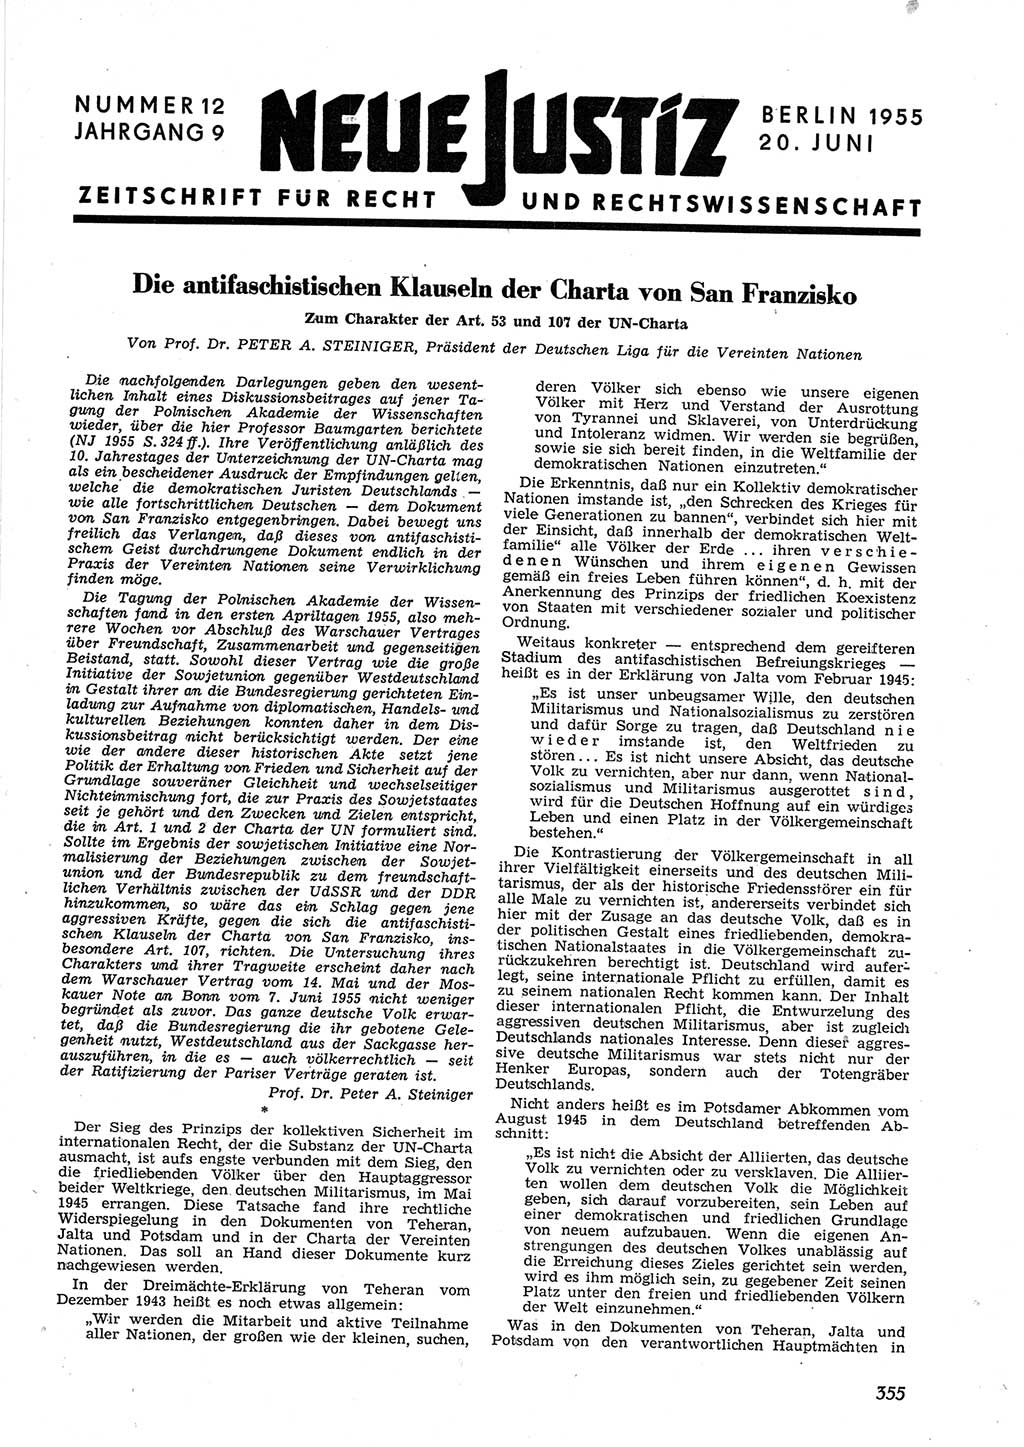 Neue Justiz (NJ), Zeitschrift für Recht und Rechtswissenschaft [Deutsche Demokratische Republik (DDR)], 9. Jahrgang 1955, Seite 355 (NJ DDR 1955, S. 355)